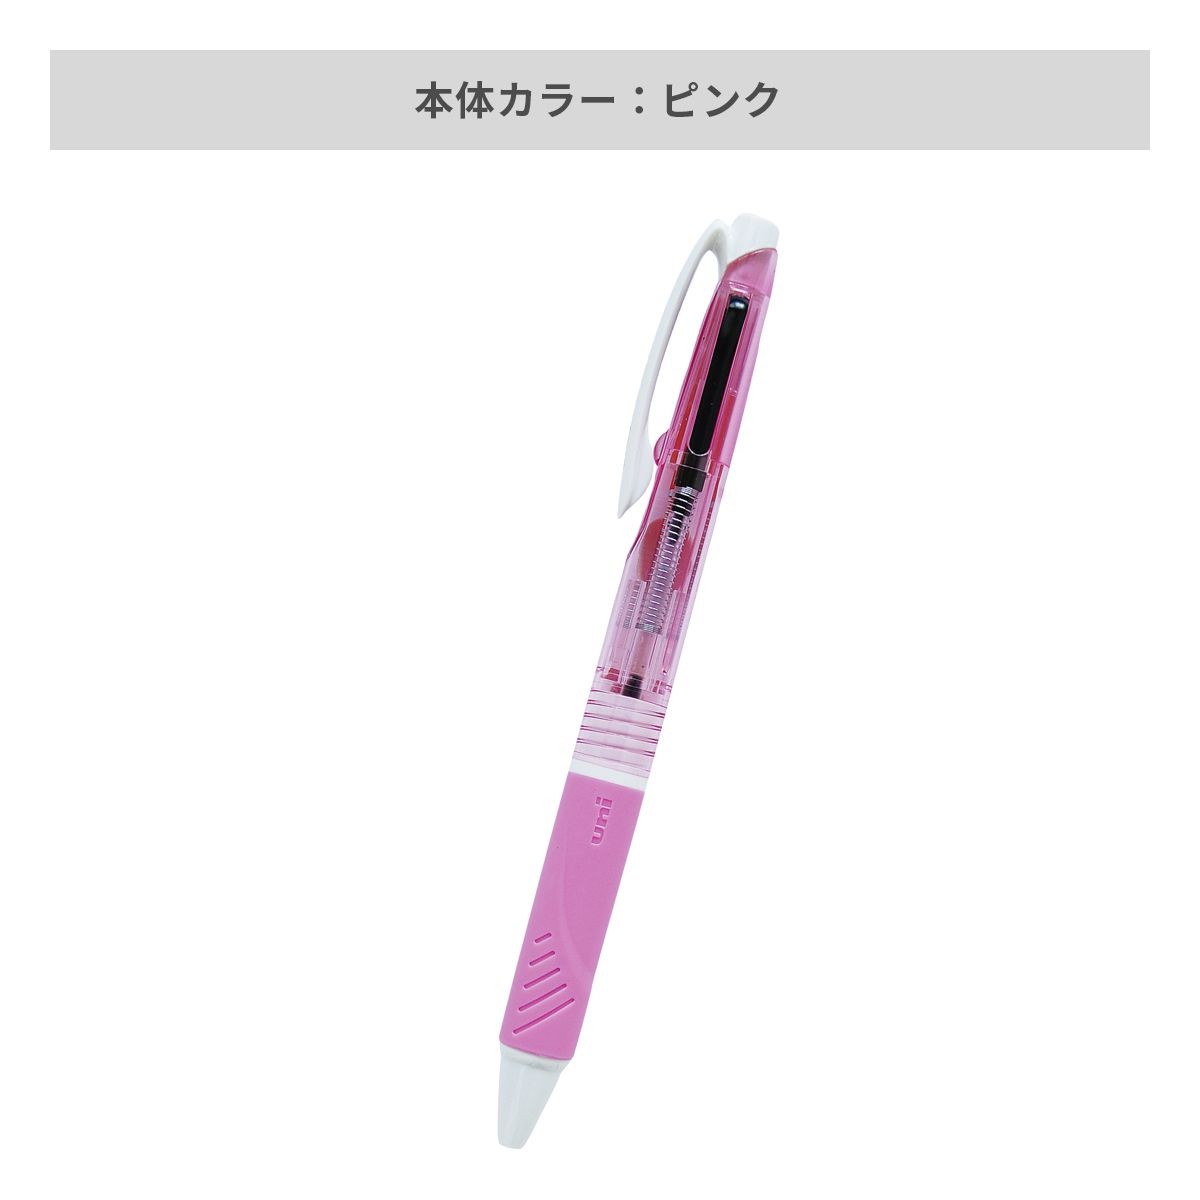 三菱鉛筆 ジェットストリーム 2色ボールペン 0.7mm【名入れボールペン